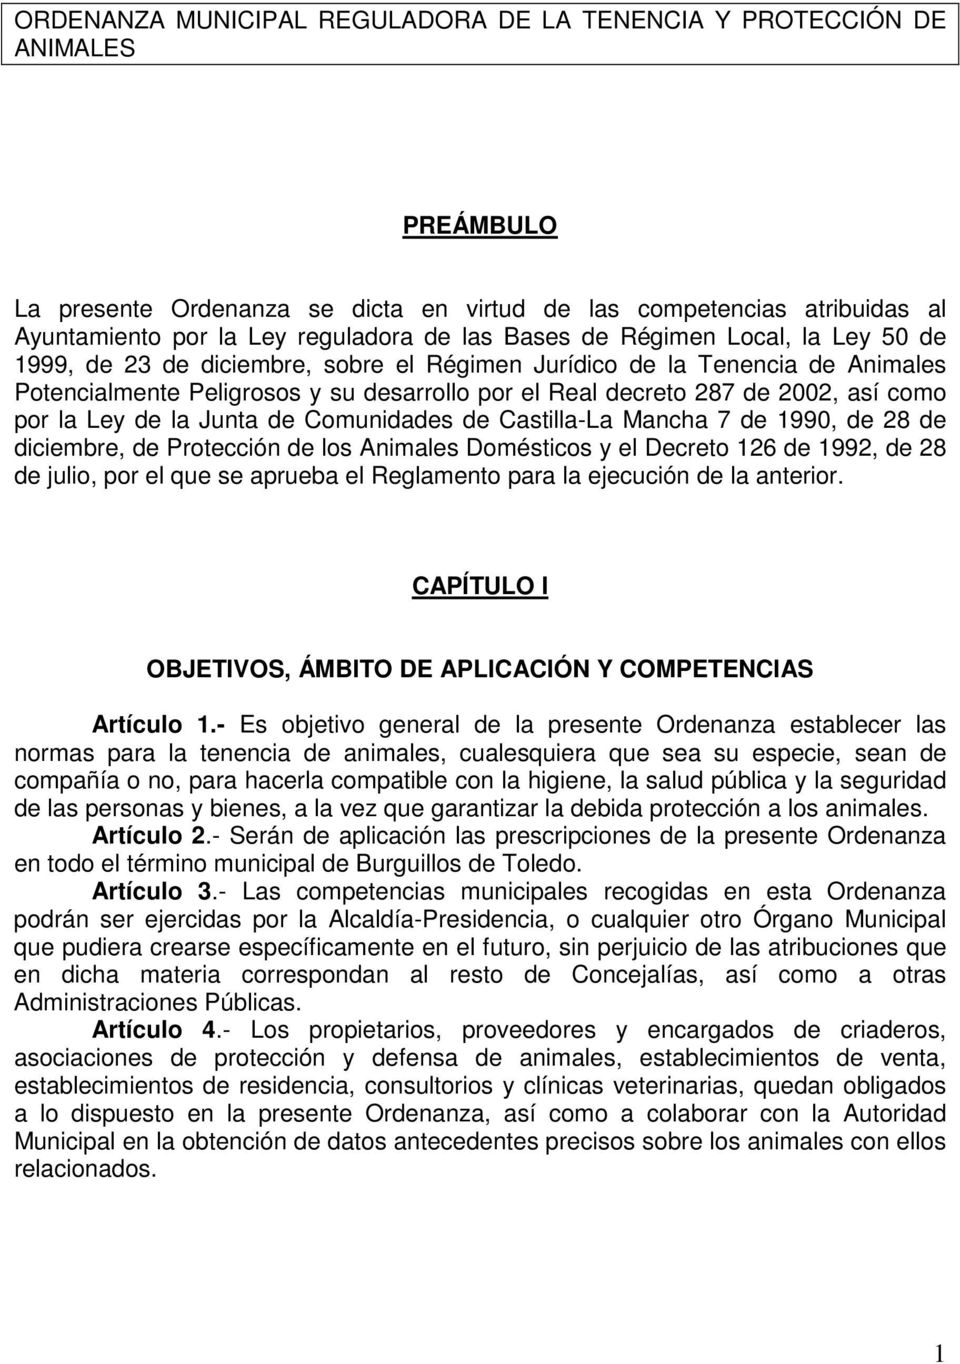 por la Ley de la Junta de Comunidades de Castilla-La Mancha 7 de 1990, de 28 de diciembre, de Protección de los Animales Domésticos y el Decreto 126 de 1992, de 28 de julio, por el que se aprueba el